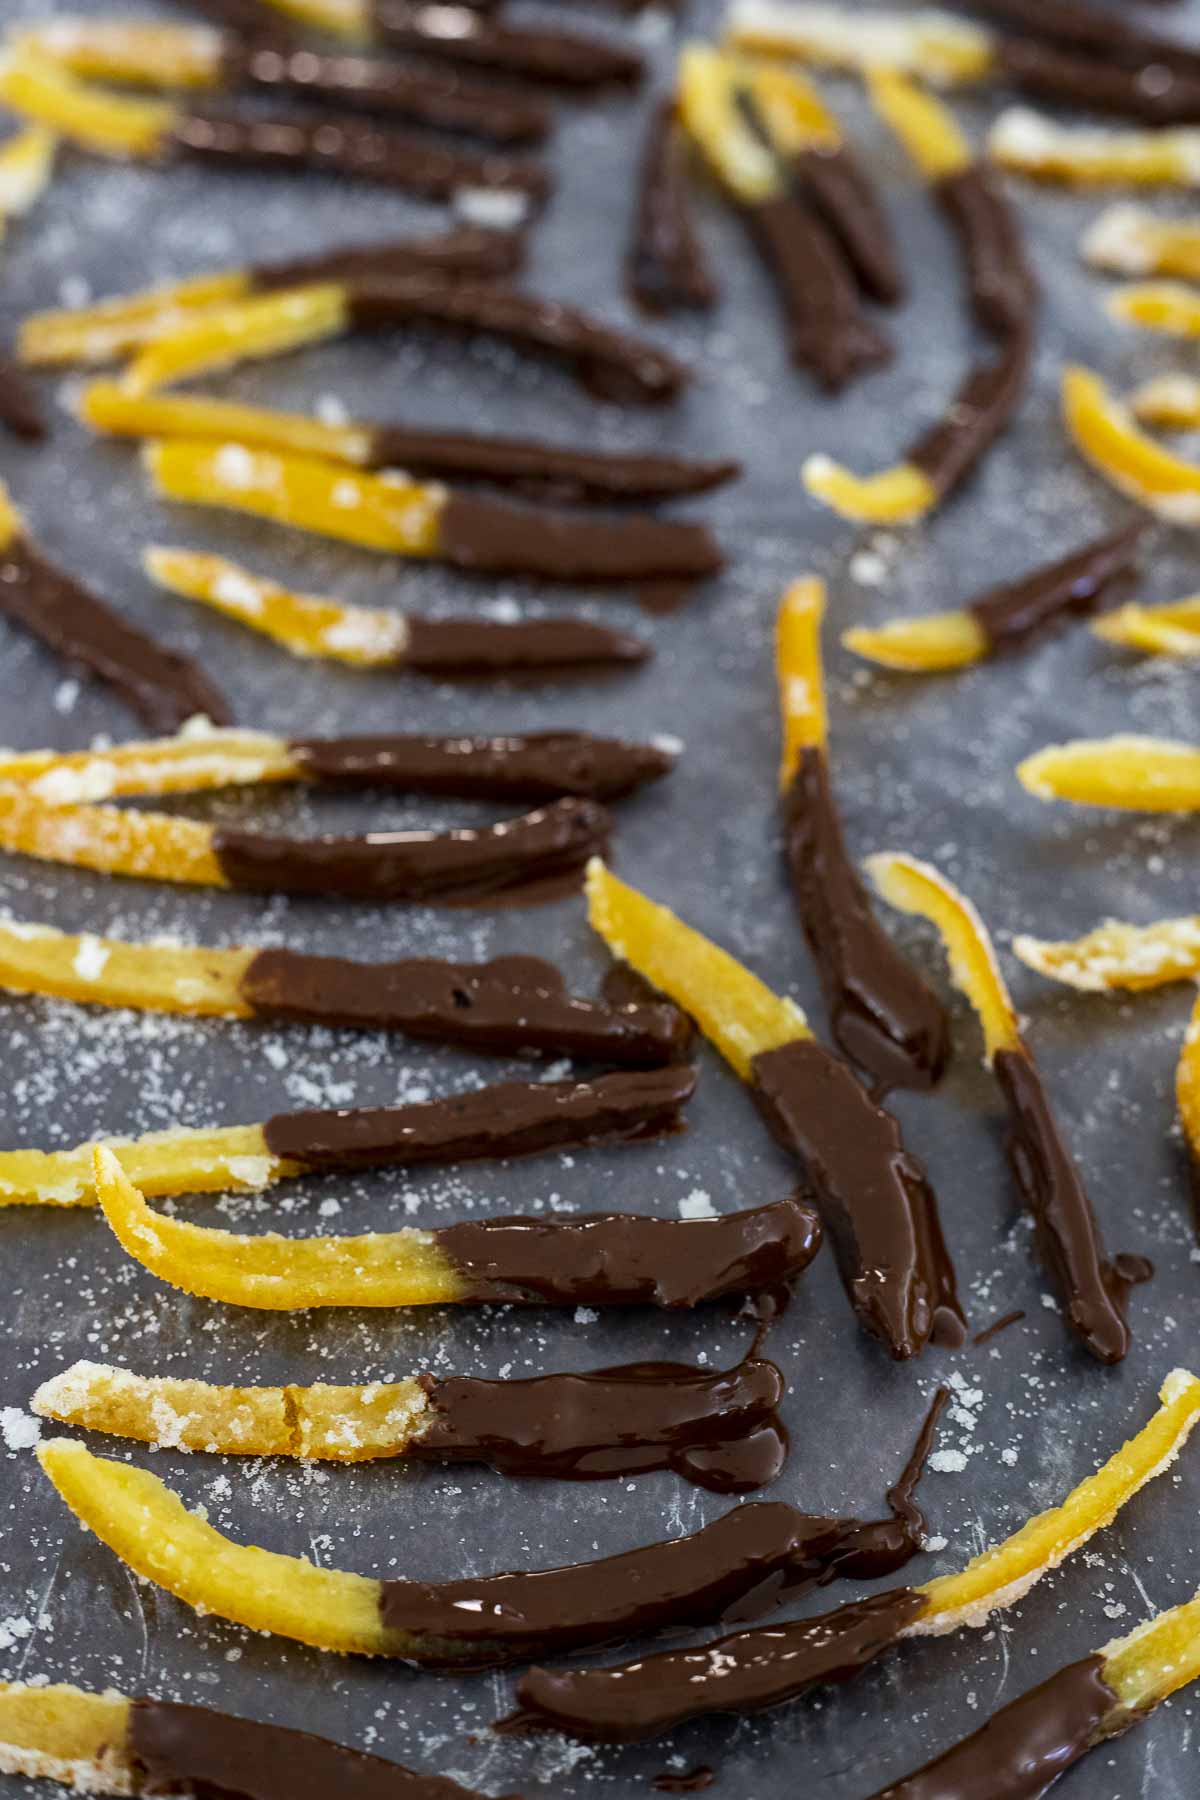 sliced orange peels dipped in chocolate